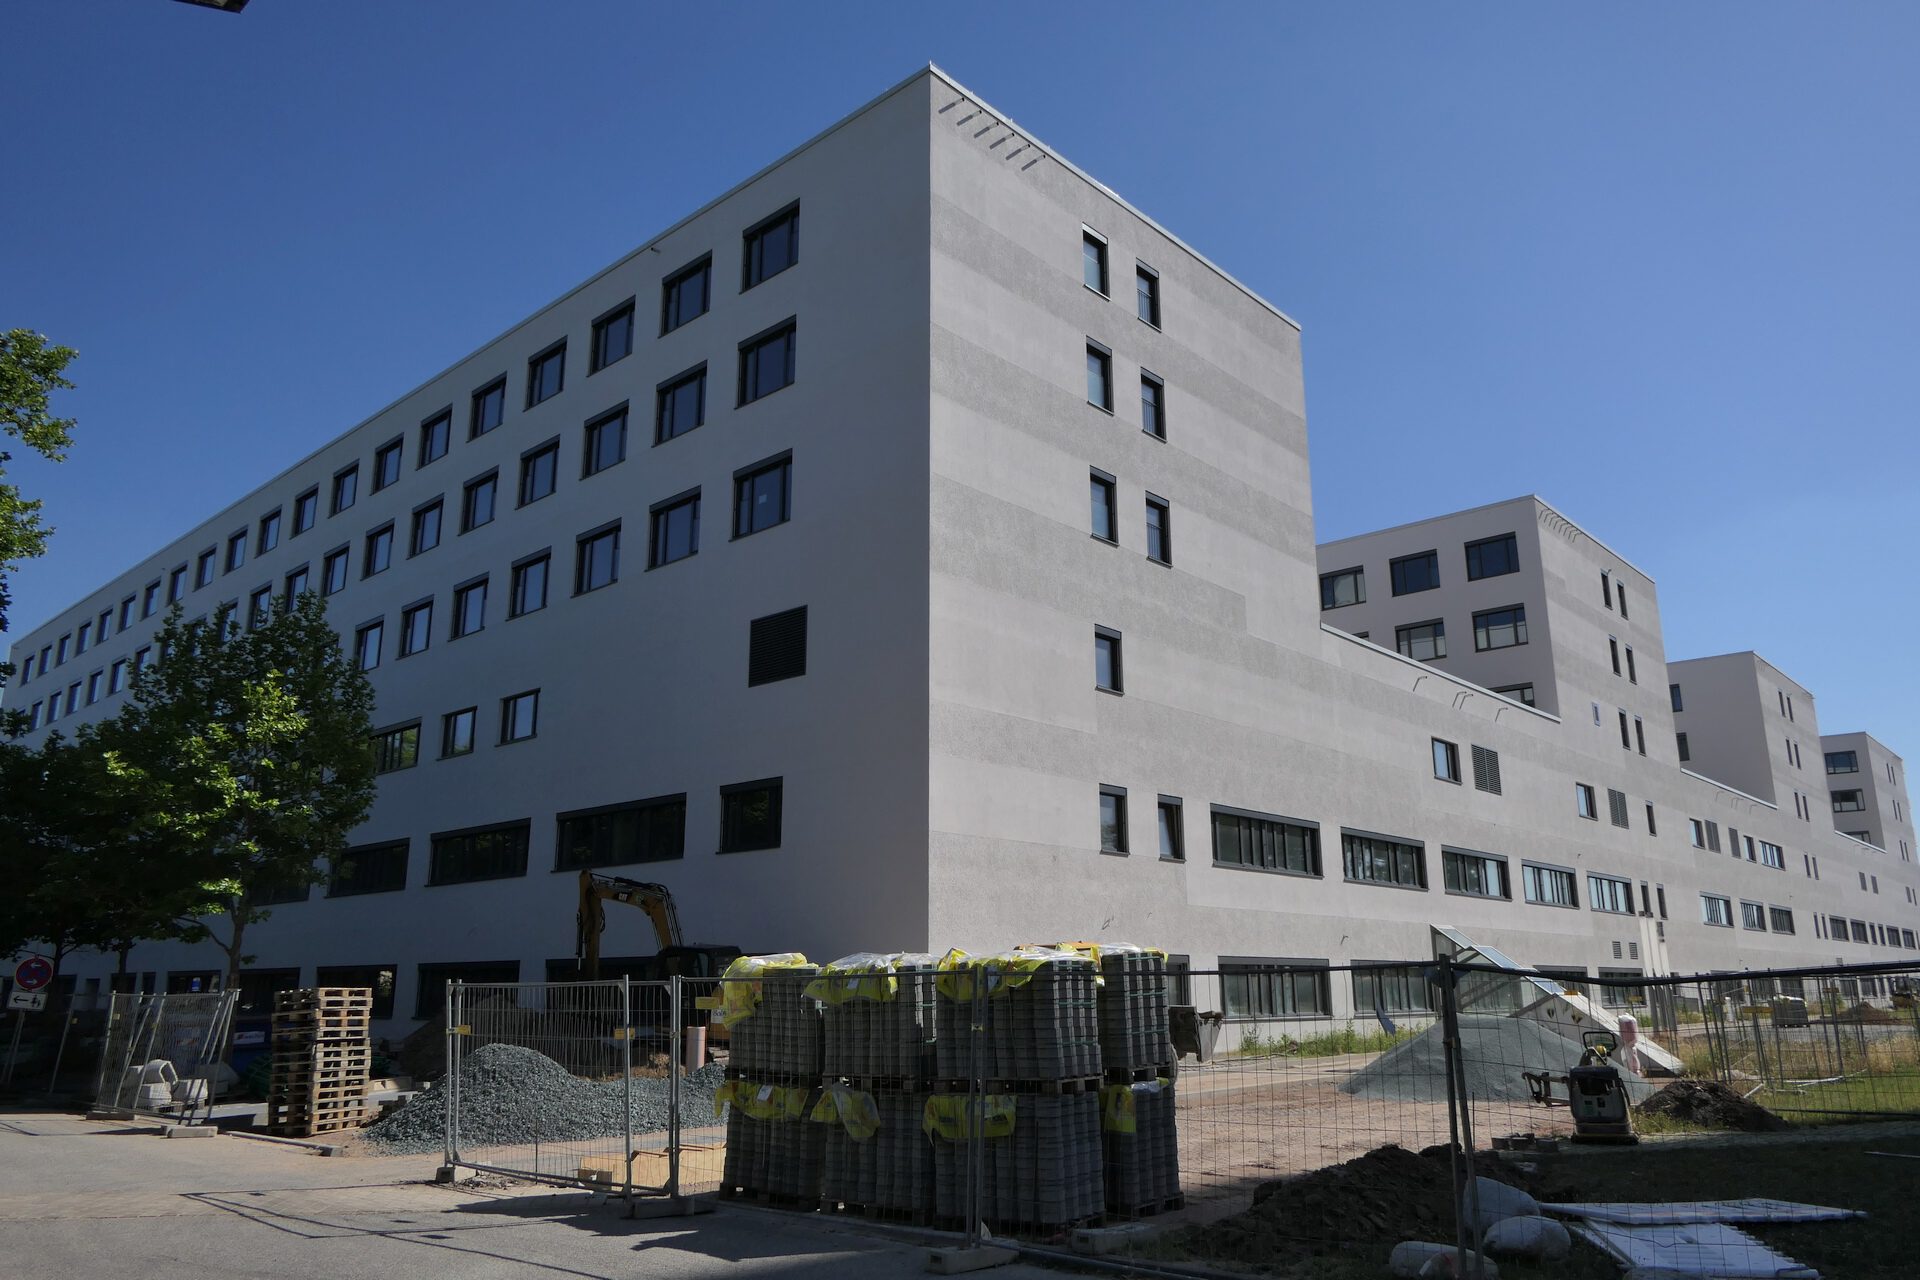 Neubau des Klinikums Höchst. Baustelle.